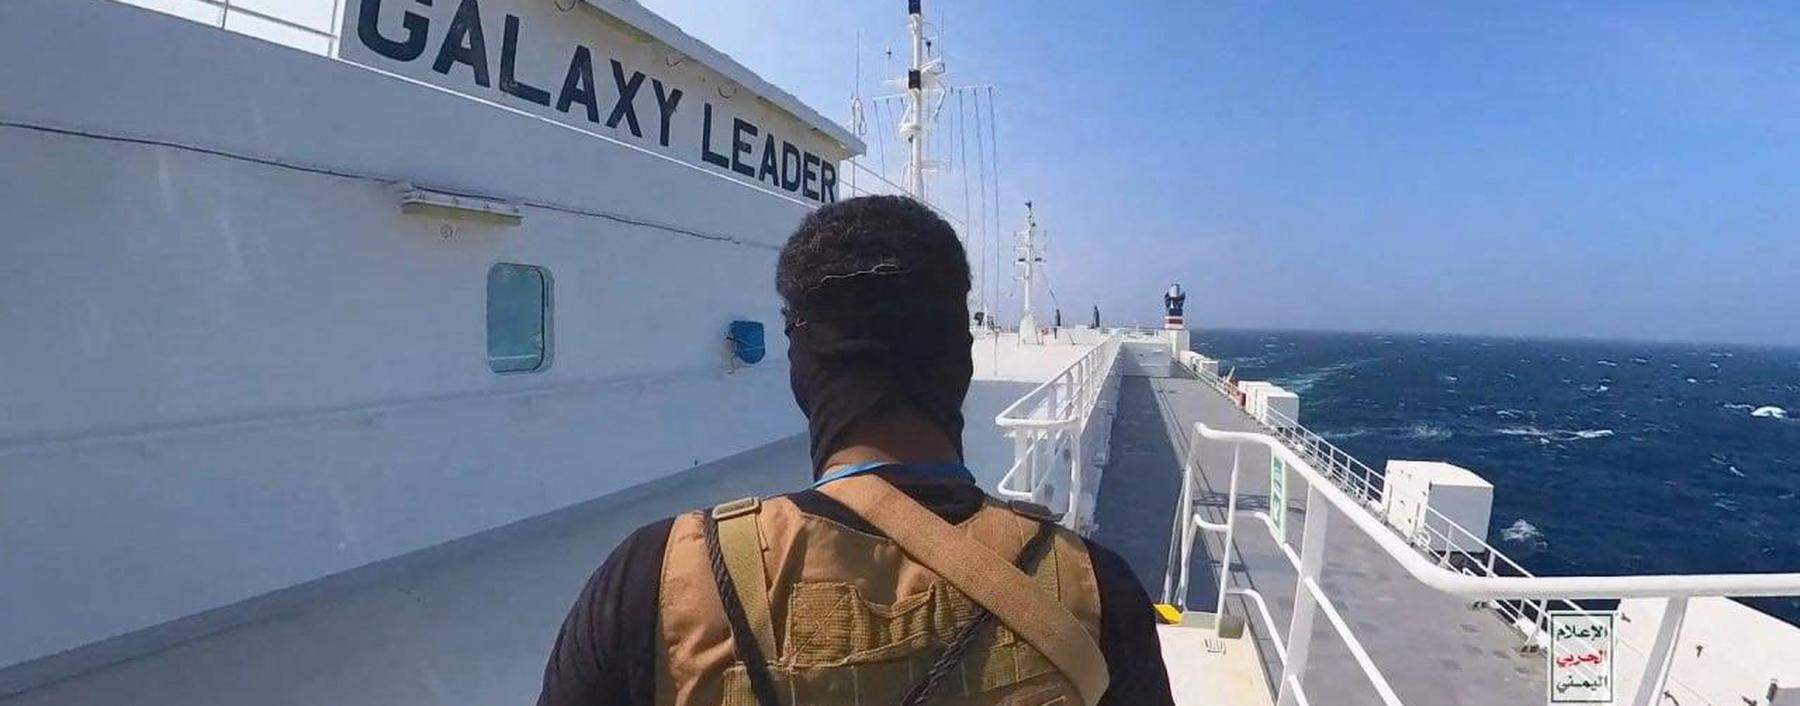 Ein Houthi-Kämpfer auf dem Frachtschiff „Galaxy Leader“ im Roten Meer, nachdem es laut Eigentümer „illegal von Militärangehörigen per Hubschrauber geentert“ worden ist. Die Houthi-Führung hatte öffentlich angekündigt, jedes Schiff mit Beziehungen zu Israel anzugreifen. 